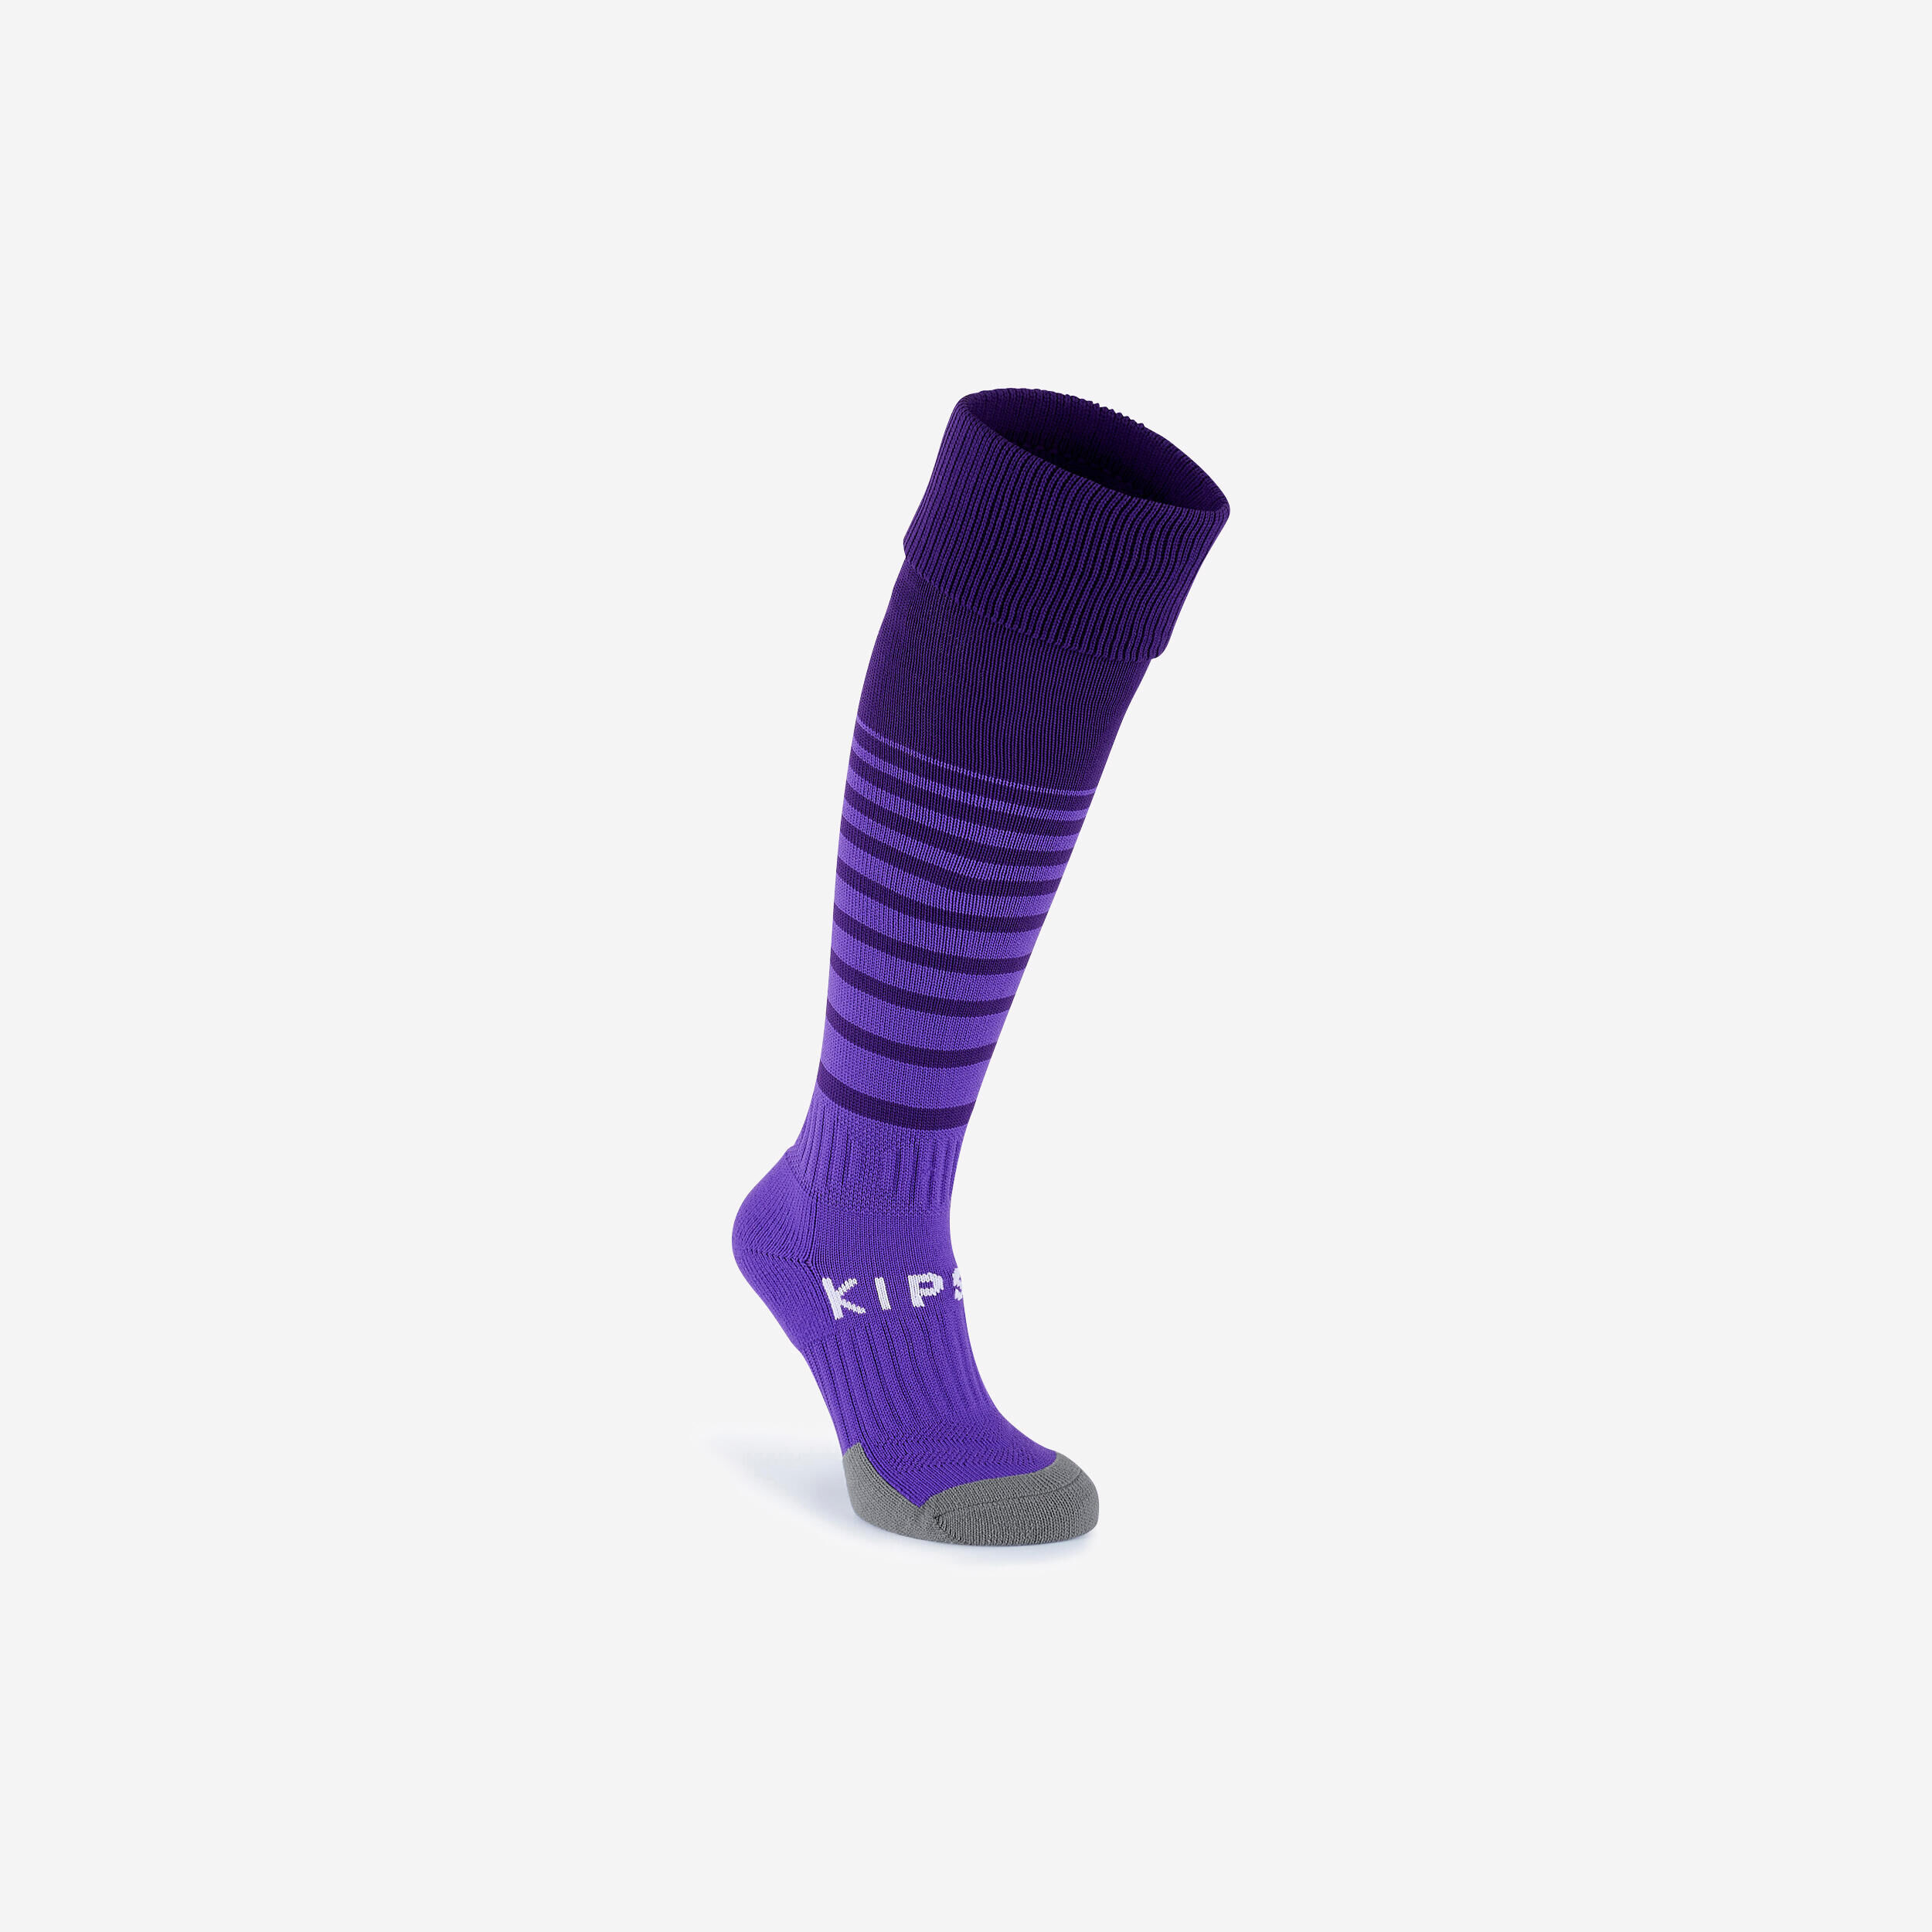 KIPSTA Kids' breathable football socks, purple